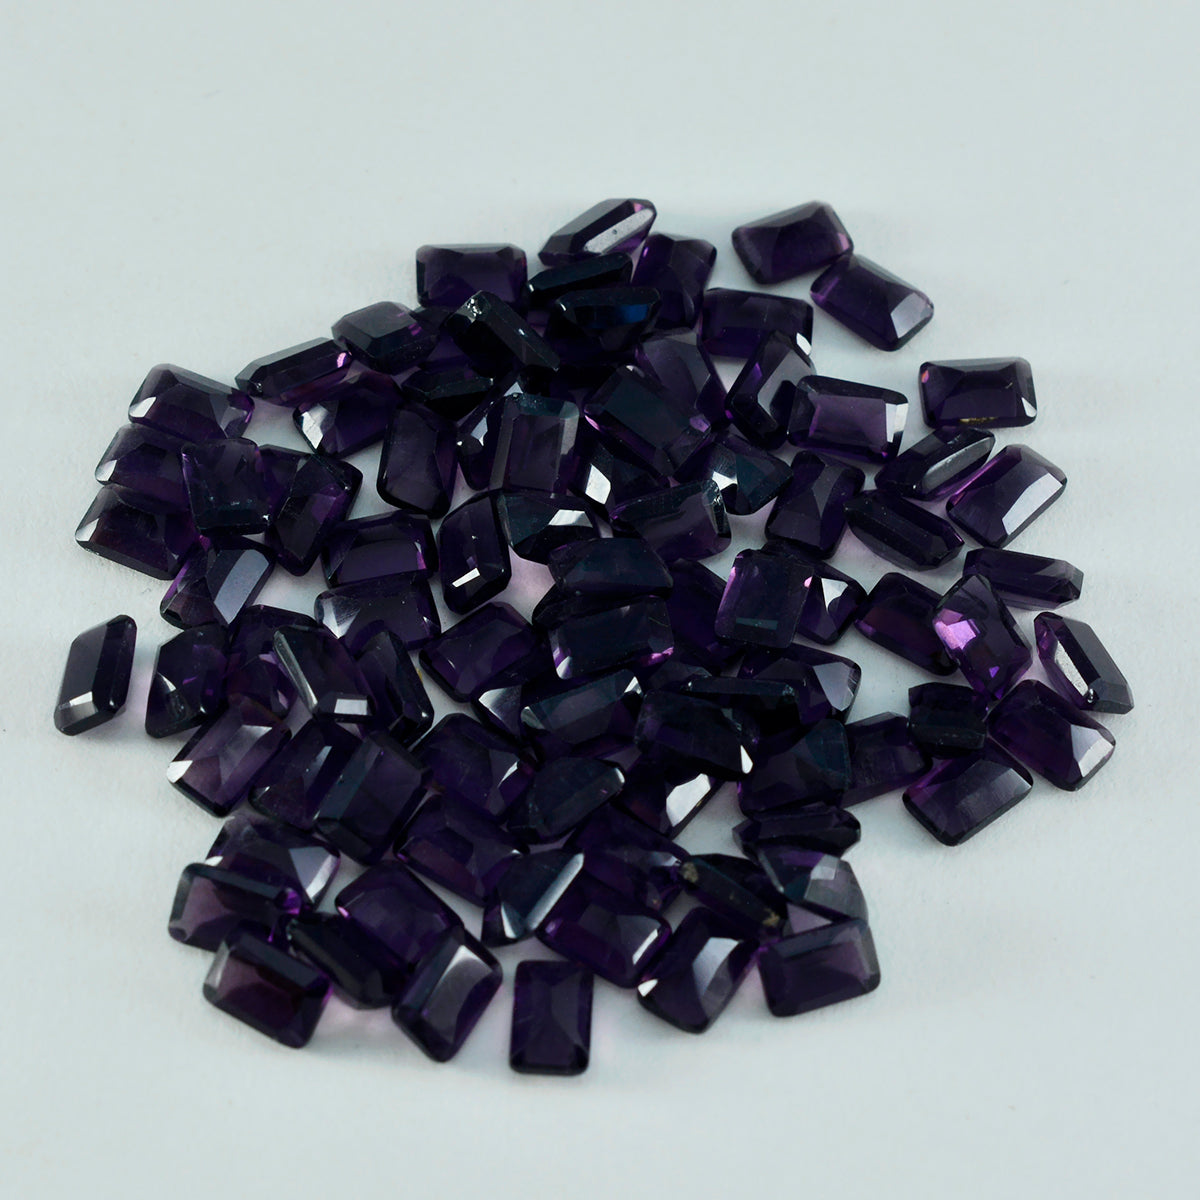 Riyogems 1 pièce améthyste violette cz à facettes 5x7mm forme octogonale aa qualité pierre en vrac